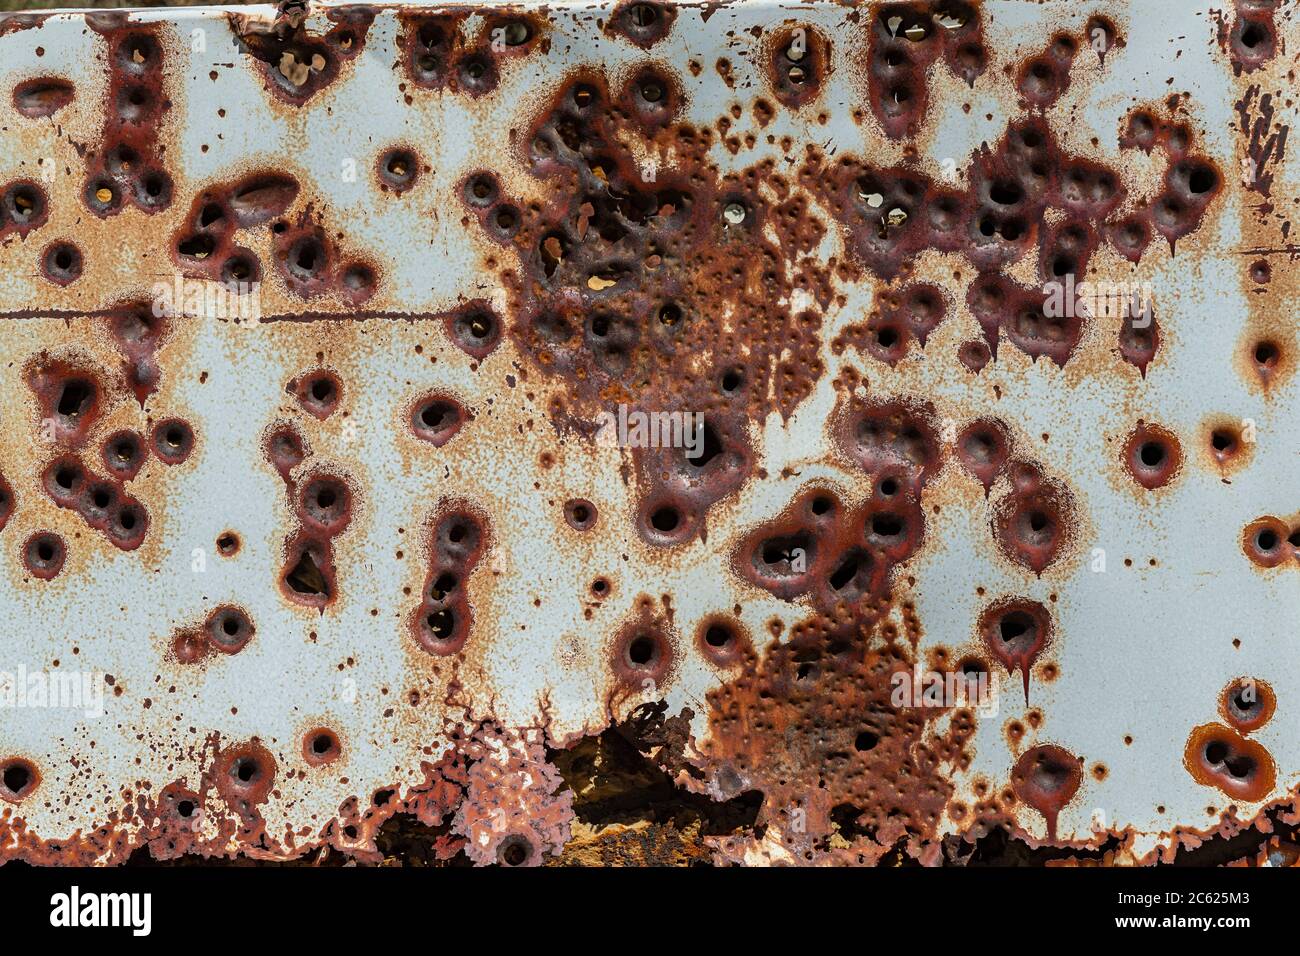 Detalle de agujeros de bala en refrigerador abandonado, Rock Springs Wyoming, EE.UU Foto de stock